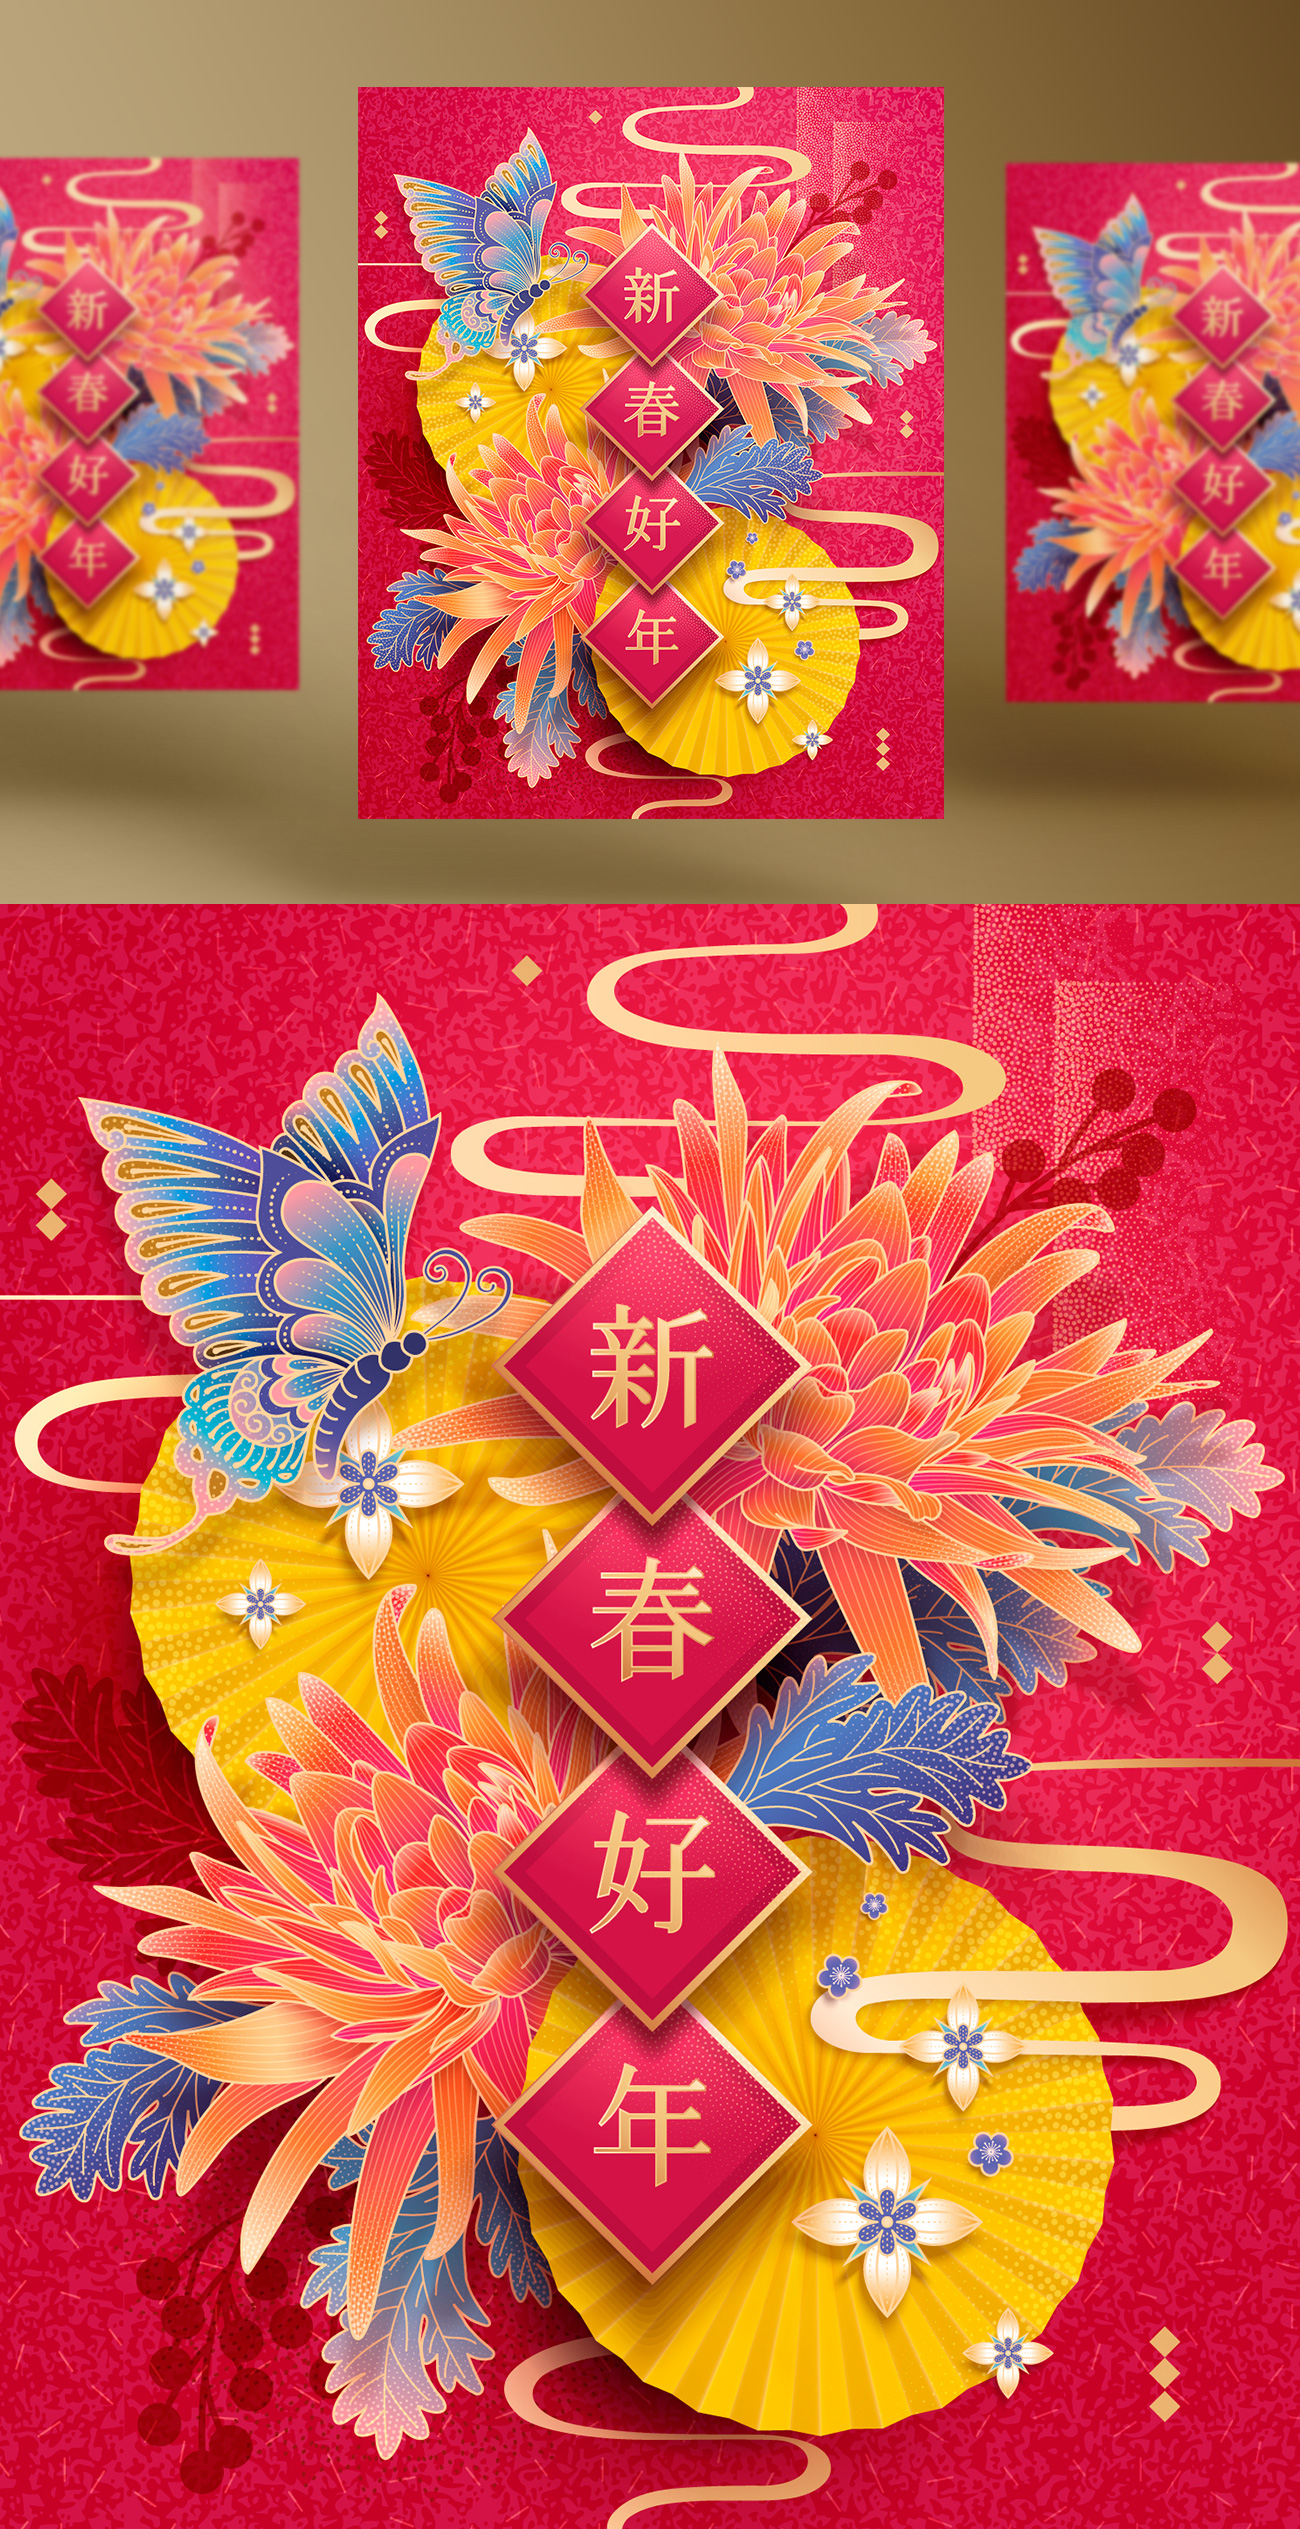 【新春好年】2019猪年农历新年菊花蝴蝶装饰矢量海报素材